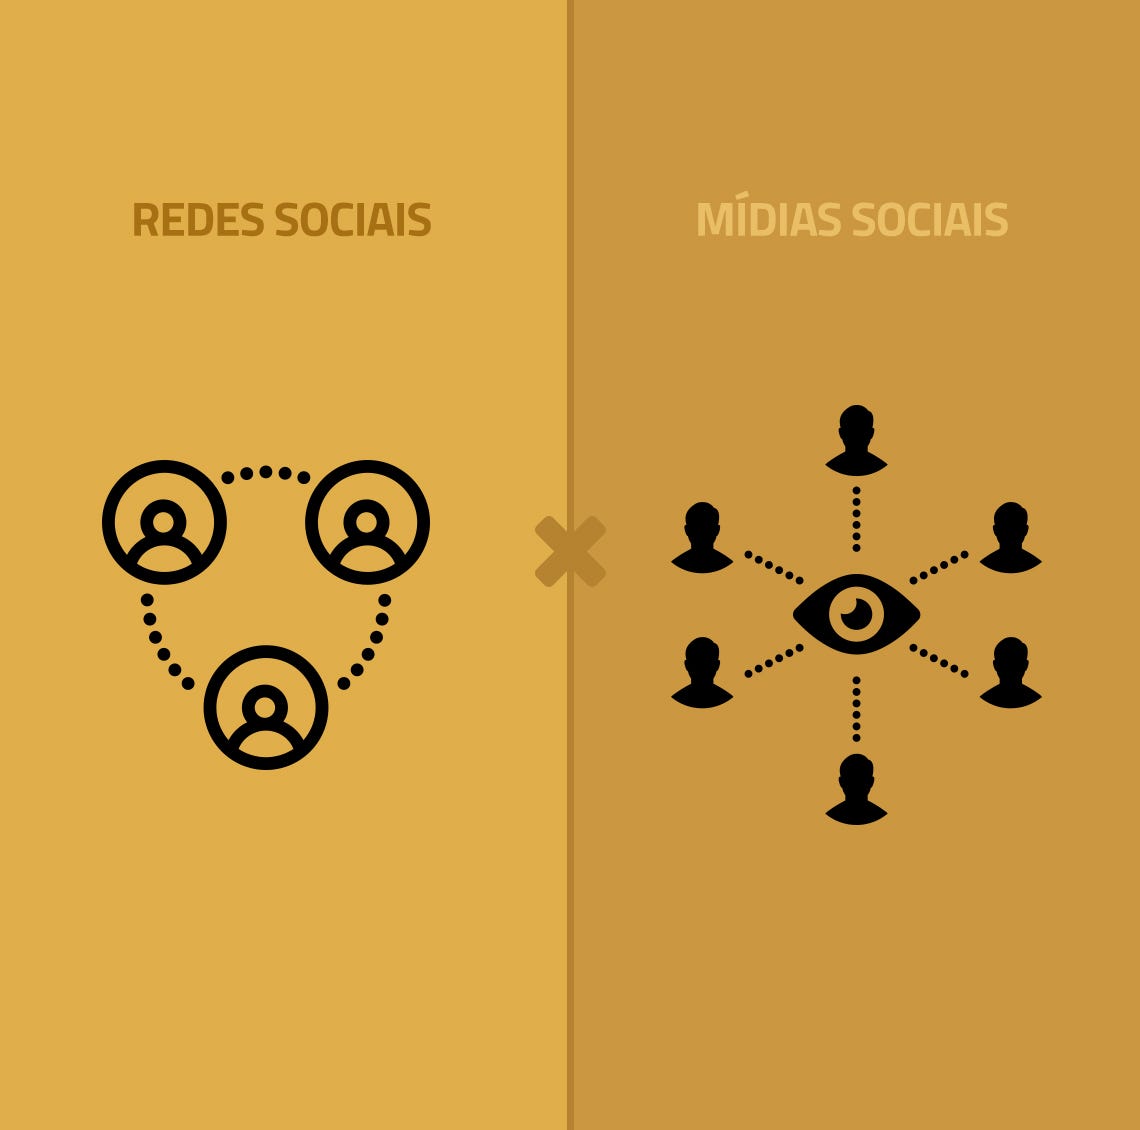 Mídias sociais e redes sociais: o conceito da interação social | by Thiago  Melo | Medium